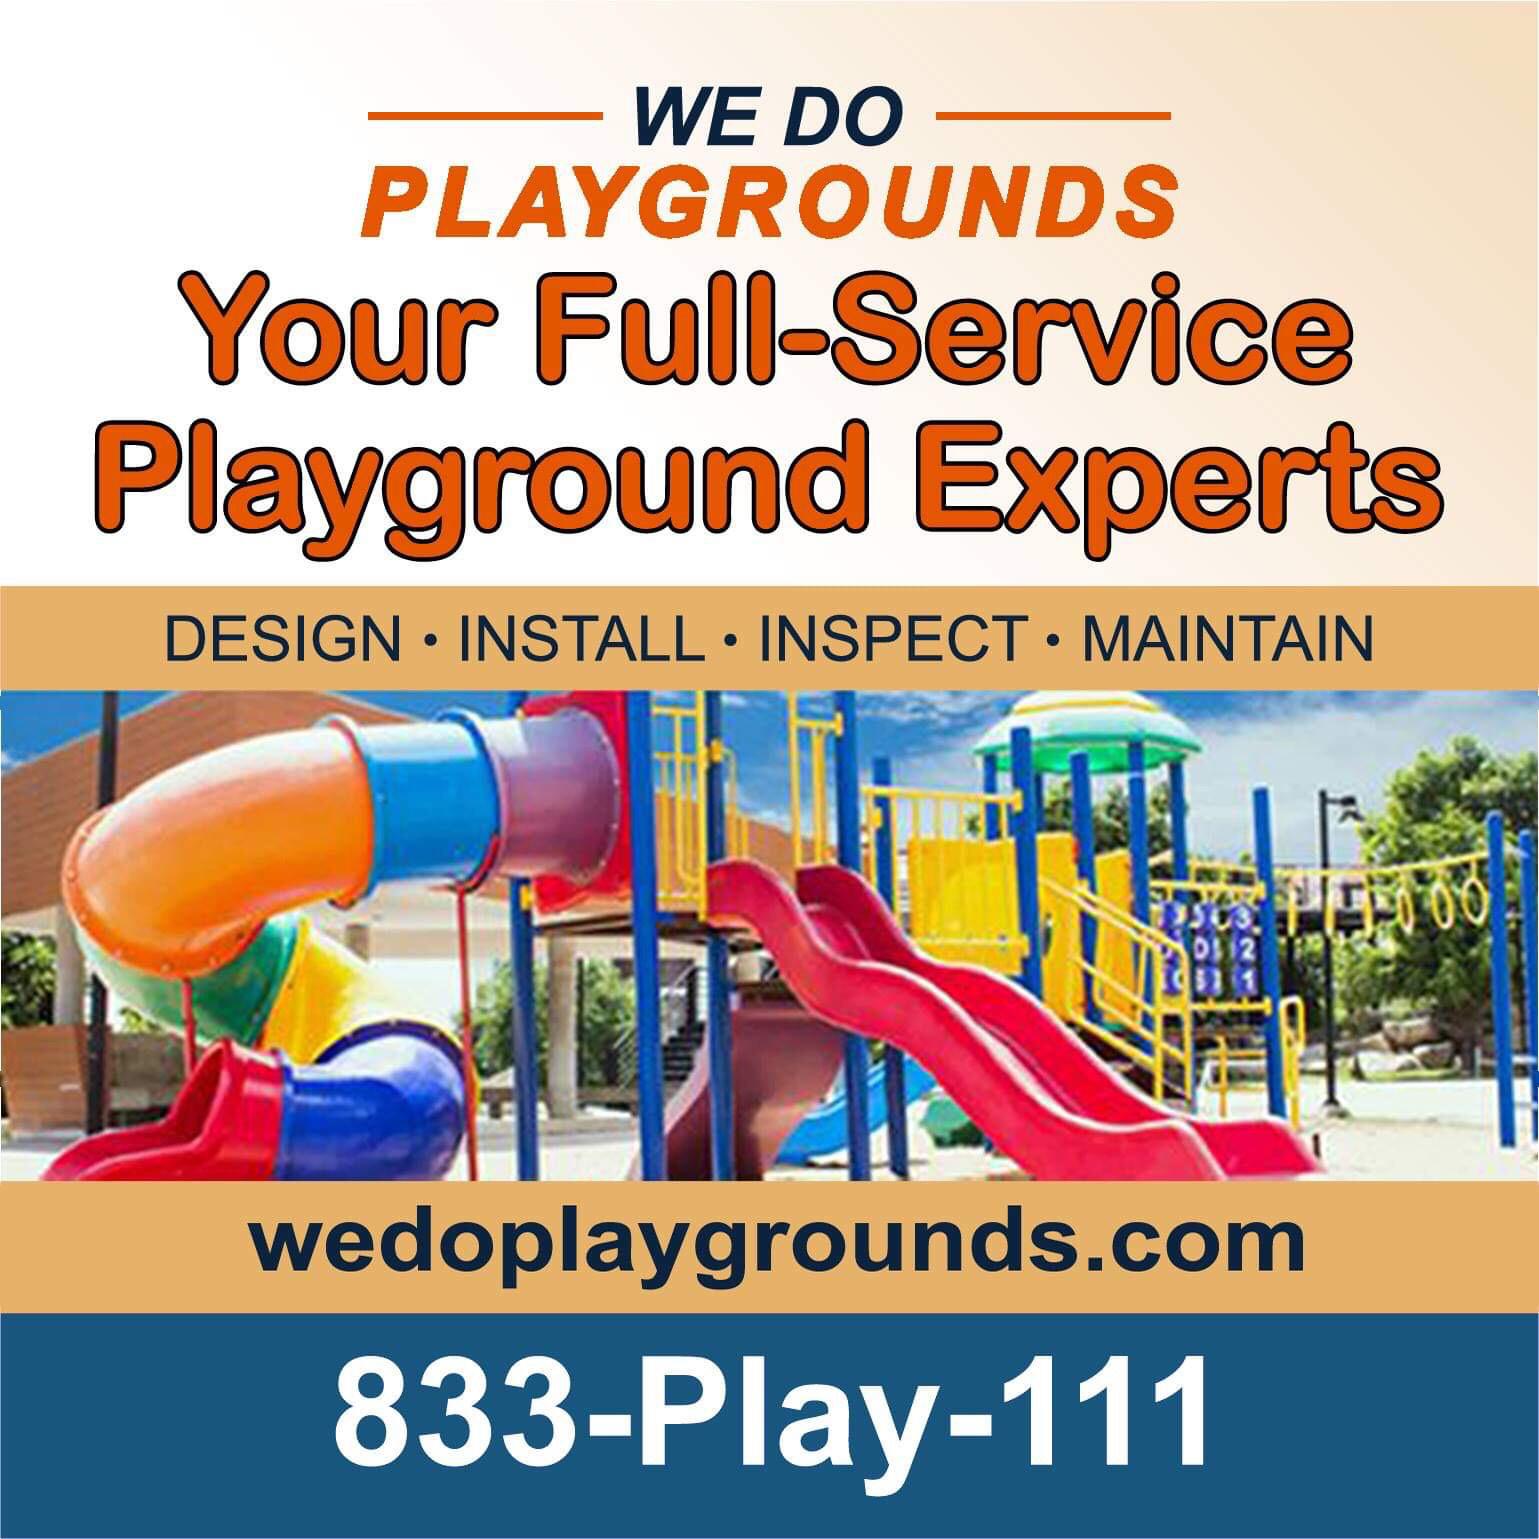 Playground Safety